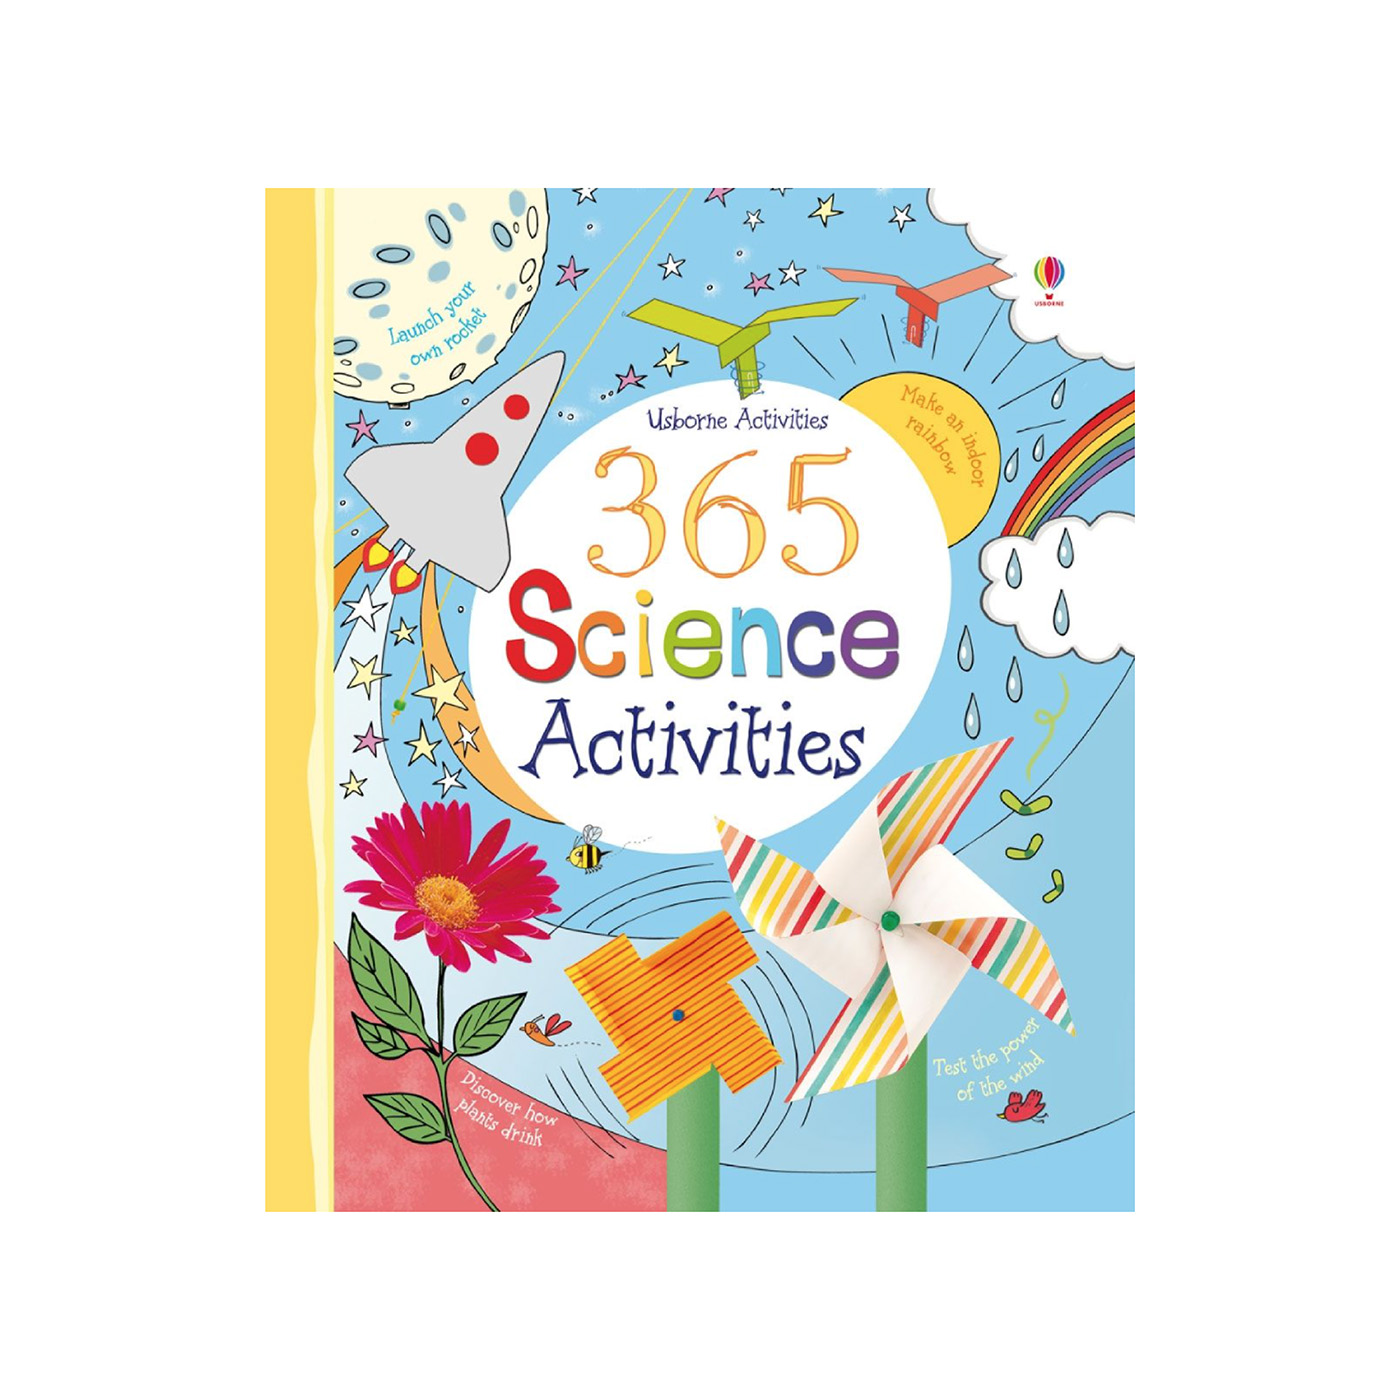  365 Science Activities